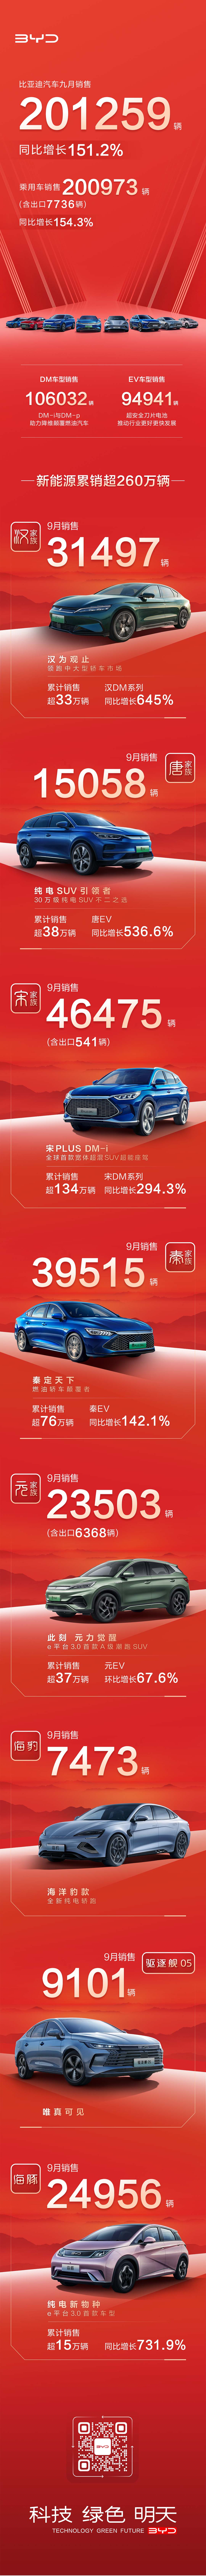 比亚迪汽车9月销售201259辆（含乘用车出口7736辆），同比增长151.2%